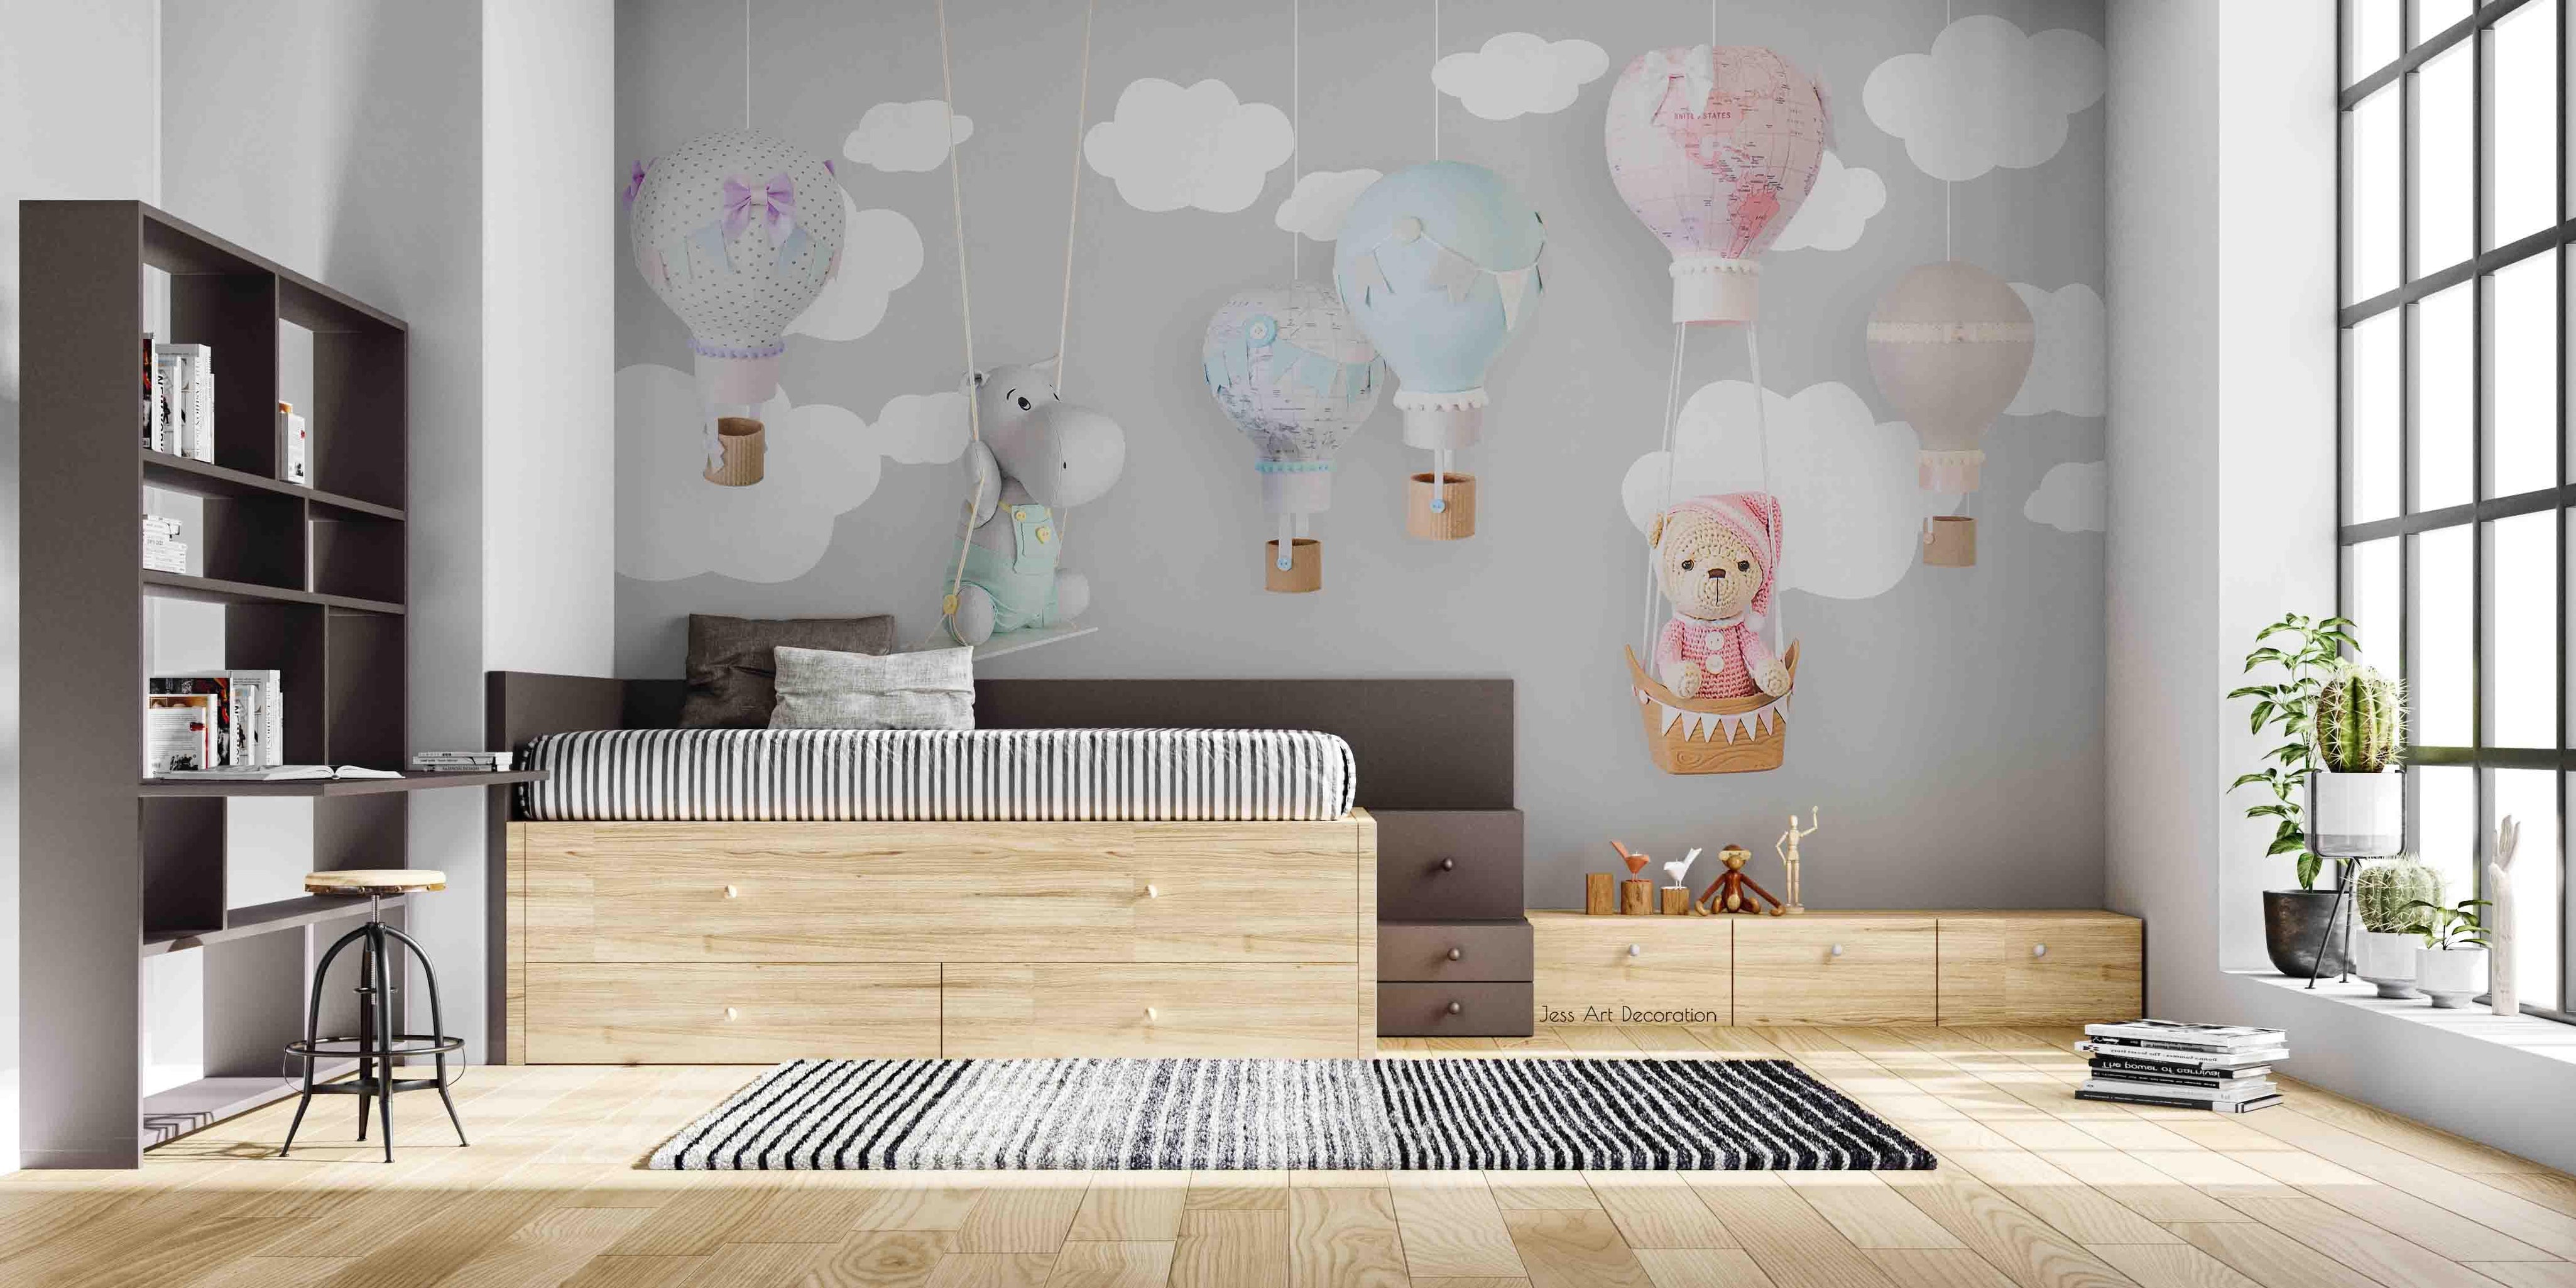 3D Hot Air Balloon Teddy Bear Hippo Map Cloud Wall Mural Wallpaper GD 3432- Jess Art Decoration